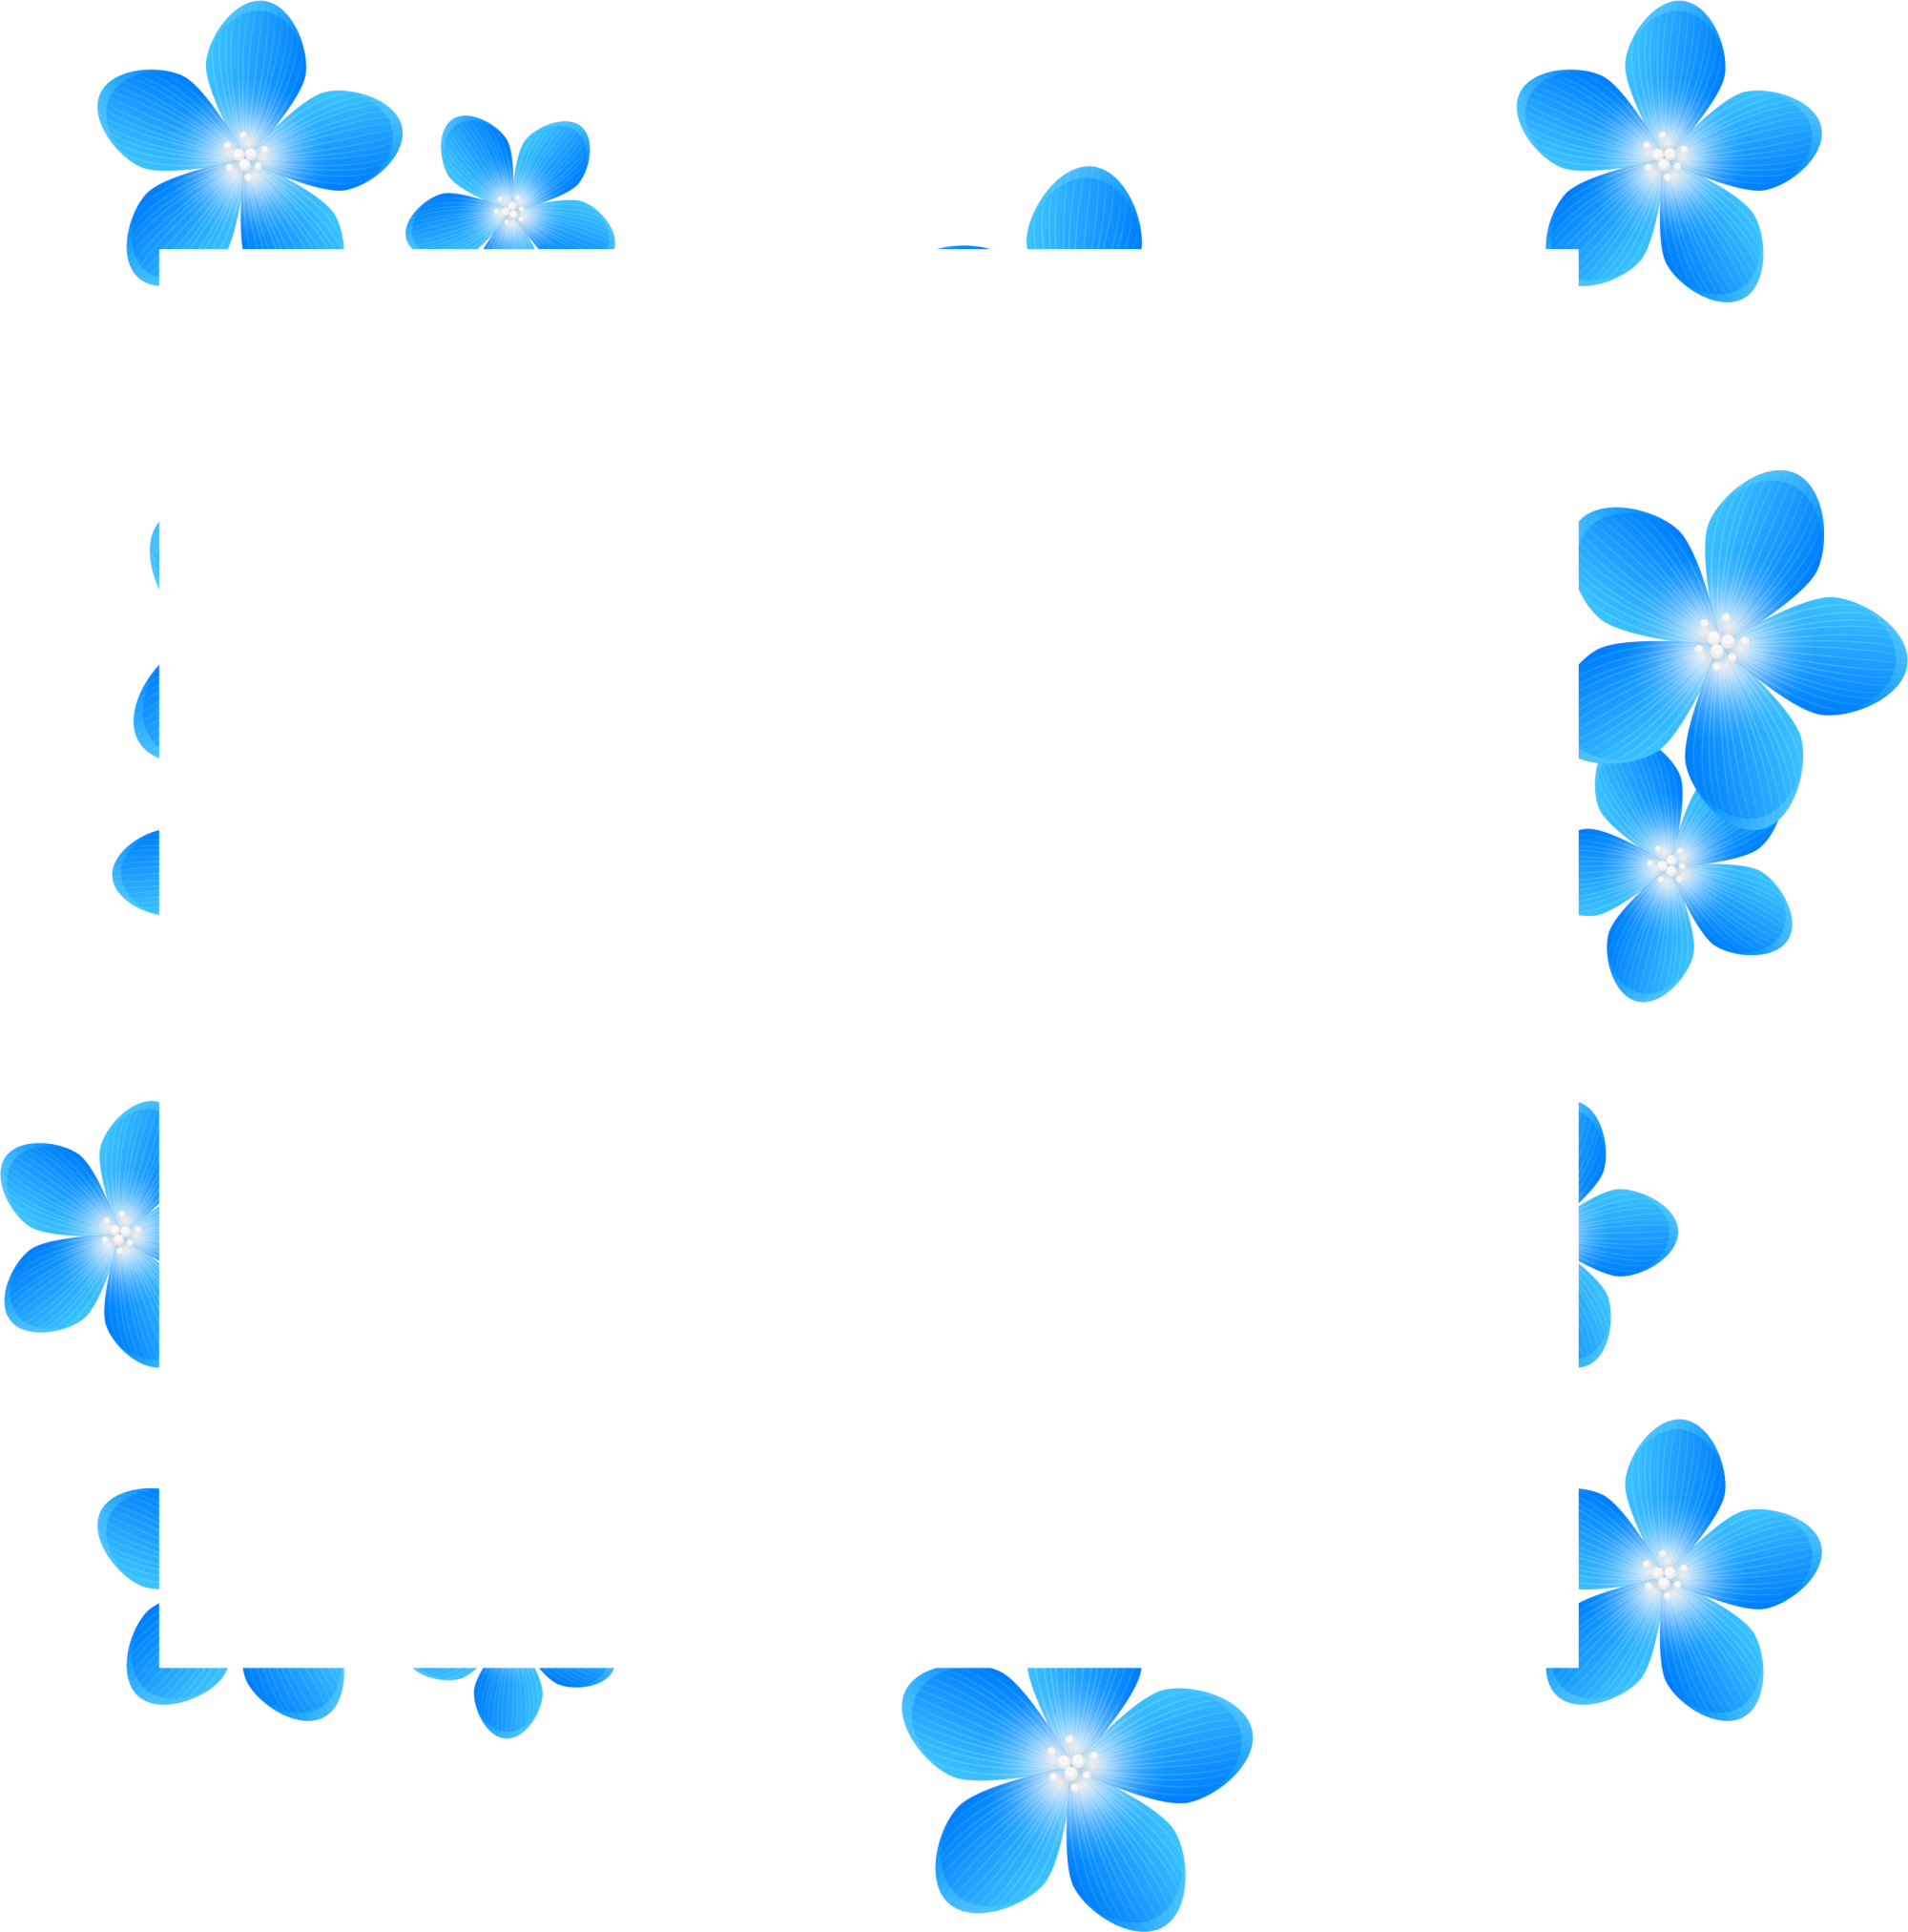 Blue Frame Flower Free Transparent Image HQ PNG Image